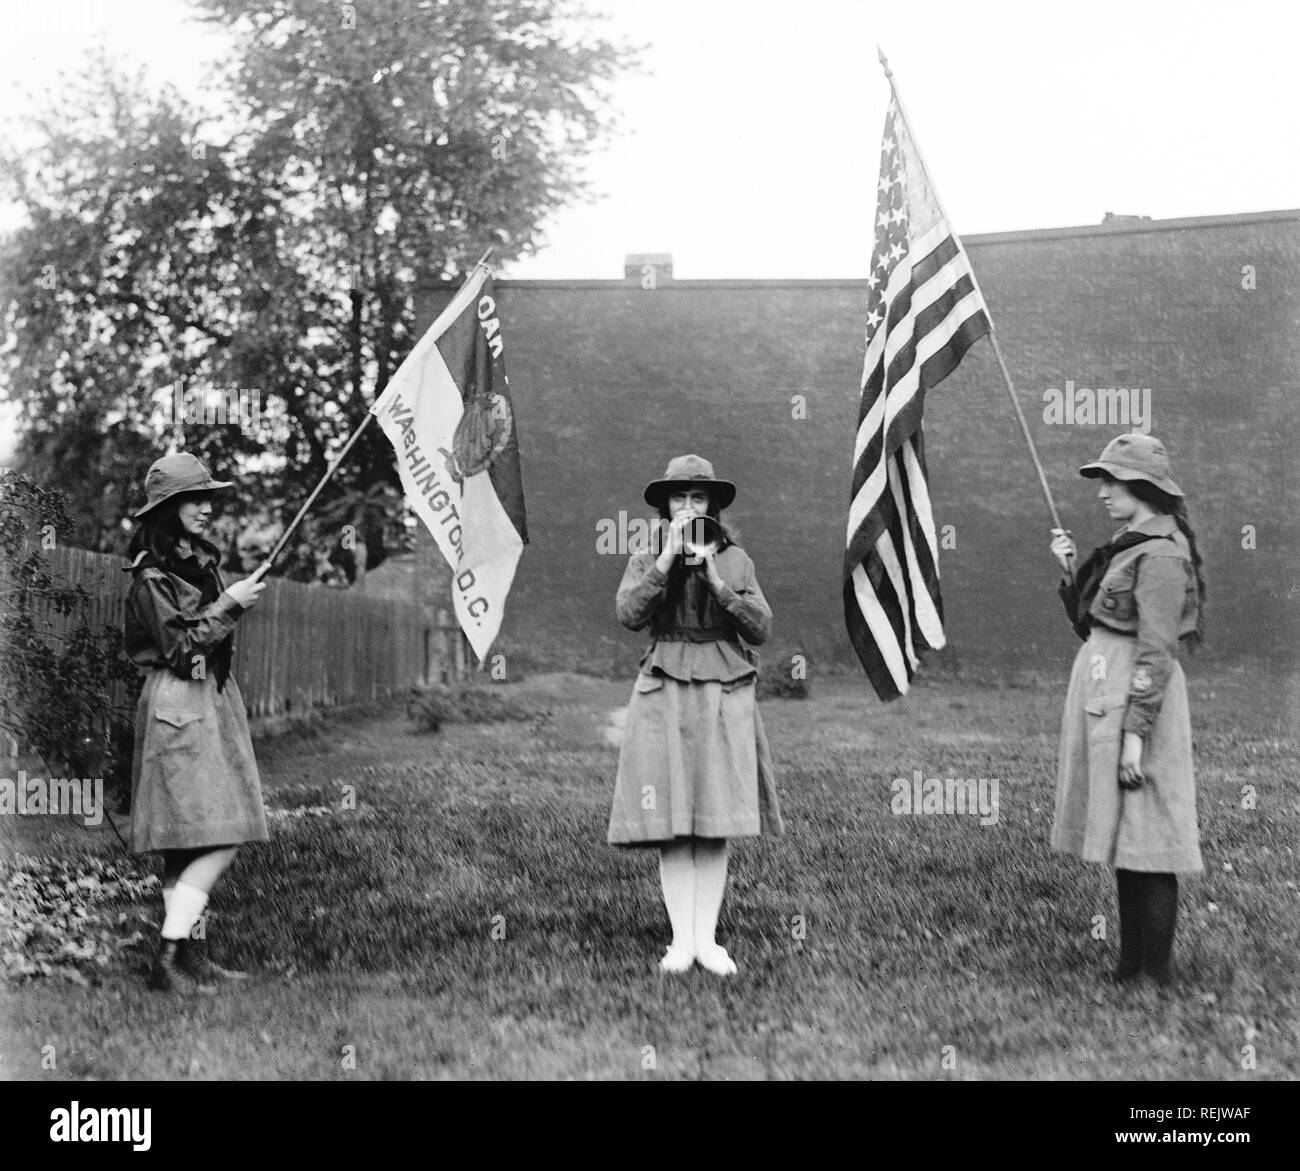 Trois Girl Scouts, deux drapeaux et un seul à jouer de la trompette, Washington DC, USA, National Photo Company, 1920 Banque D'Images